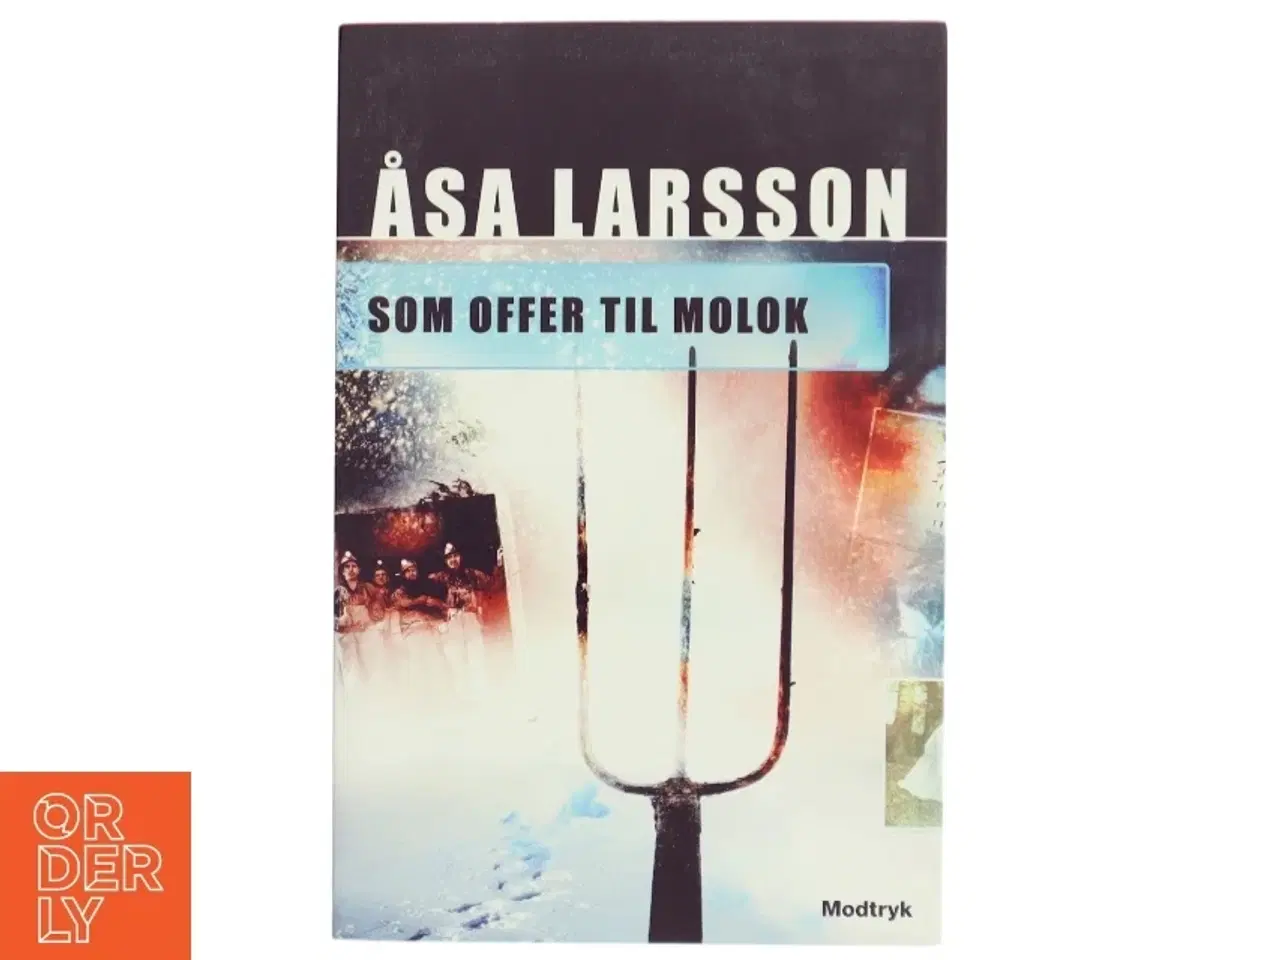 Billede 1 - 'Som offer til Molok' af Åsa Larsson (bog)